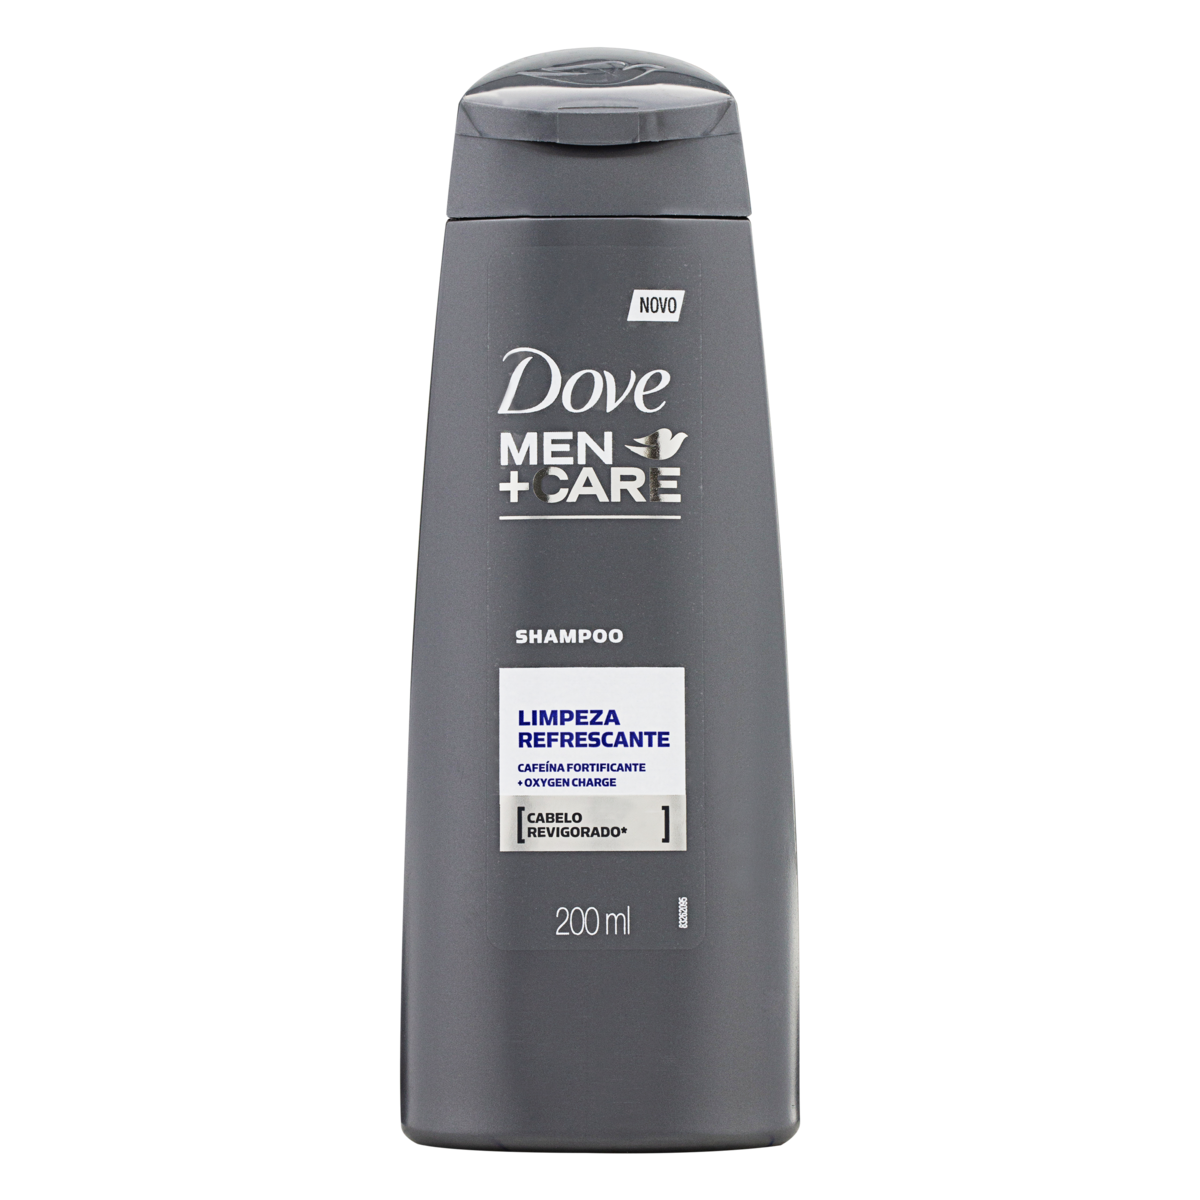 Shampoo Limpeza Refrescante - Dove Men+Care (Foto: Divulgação)